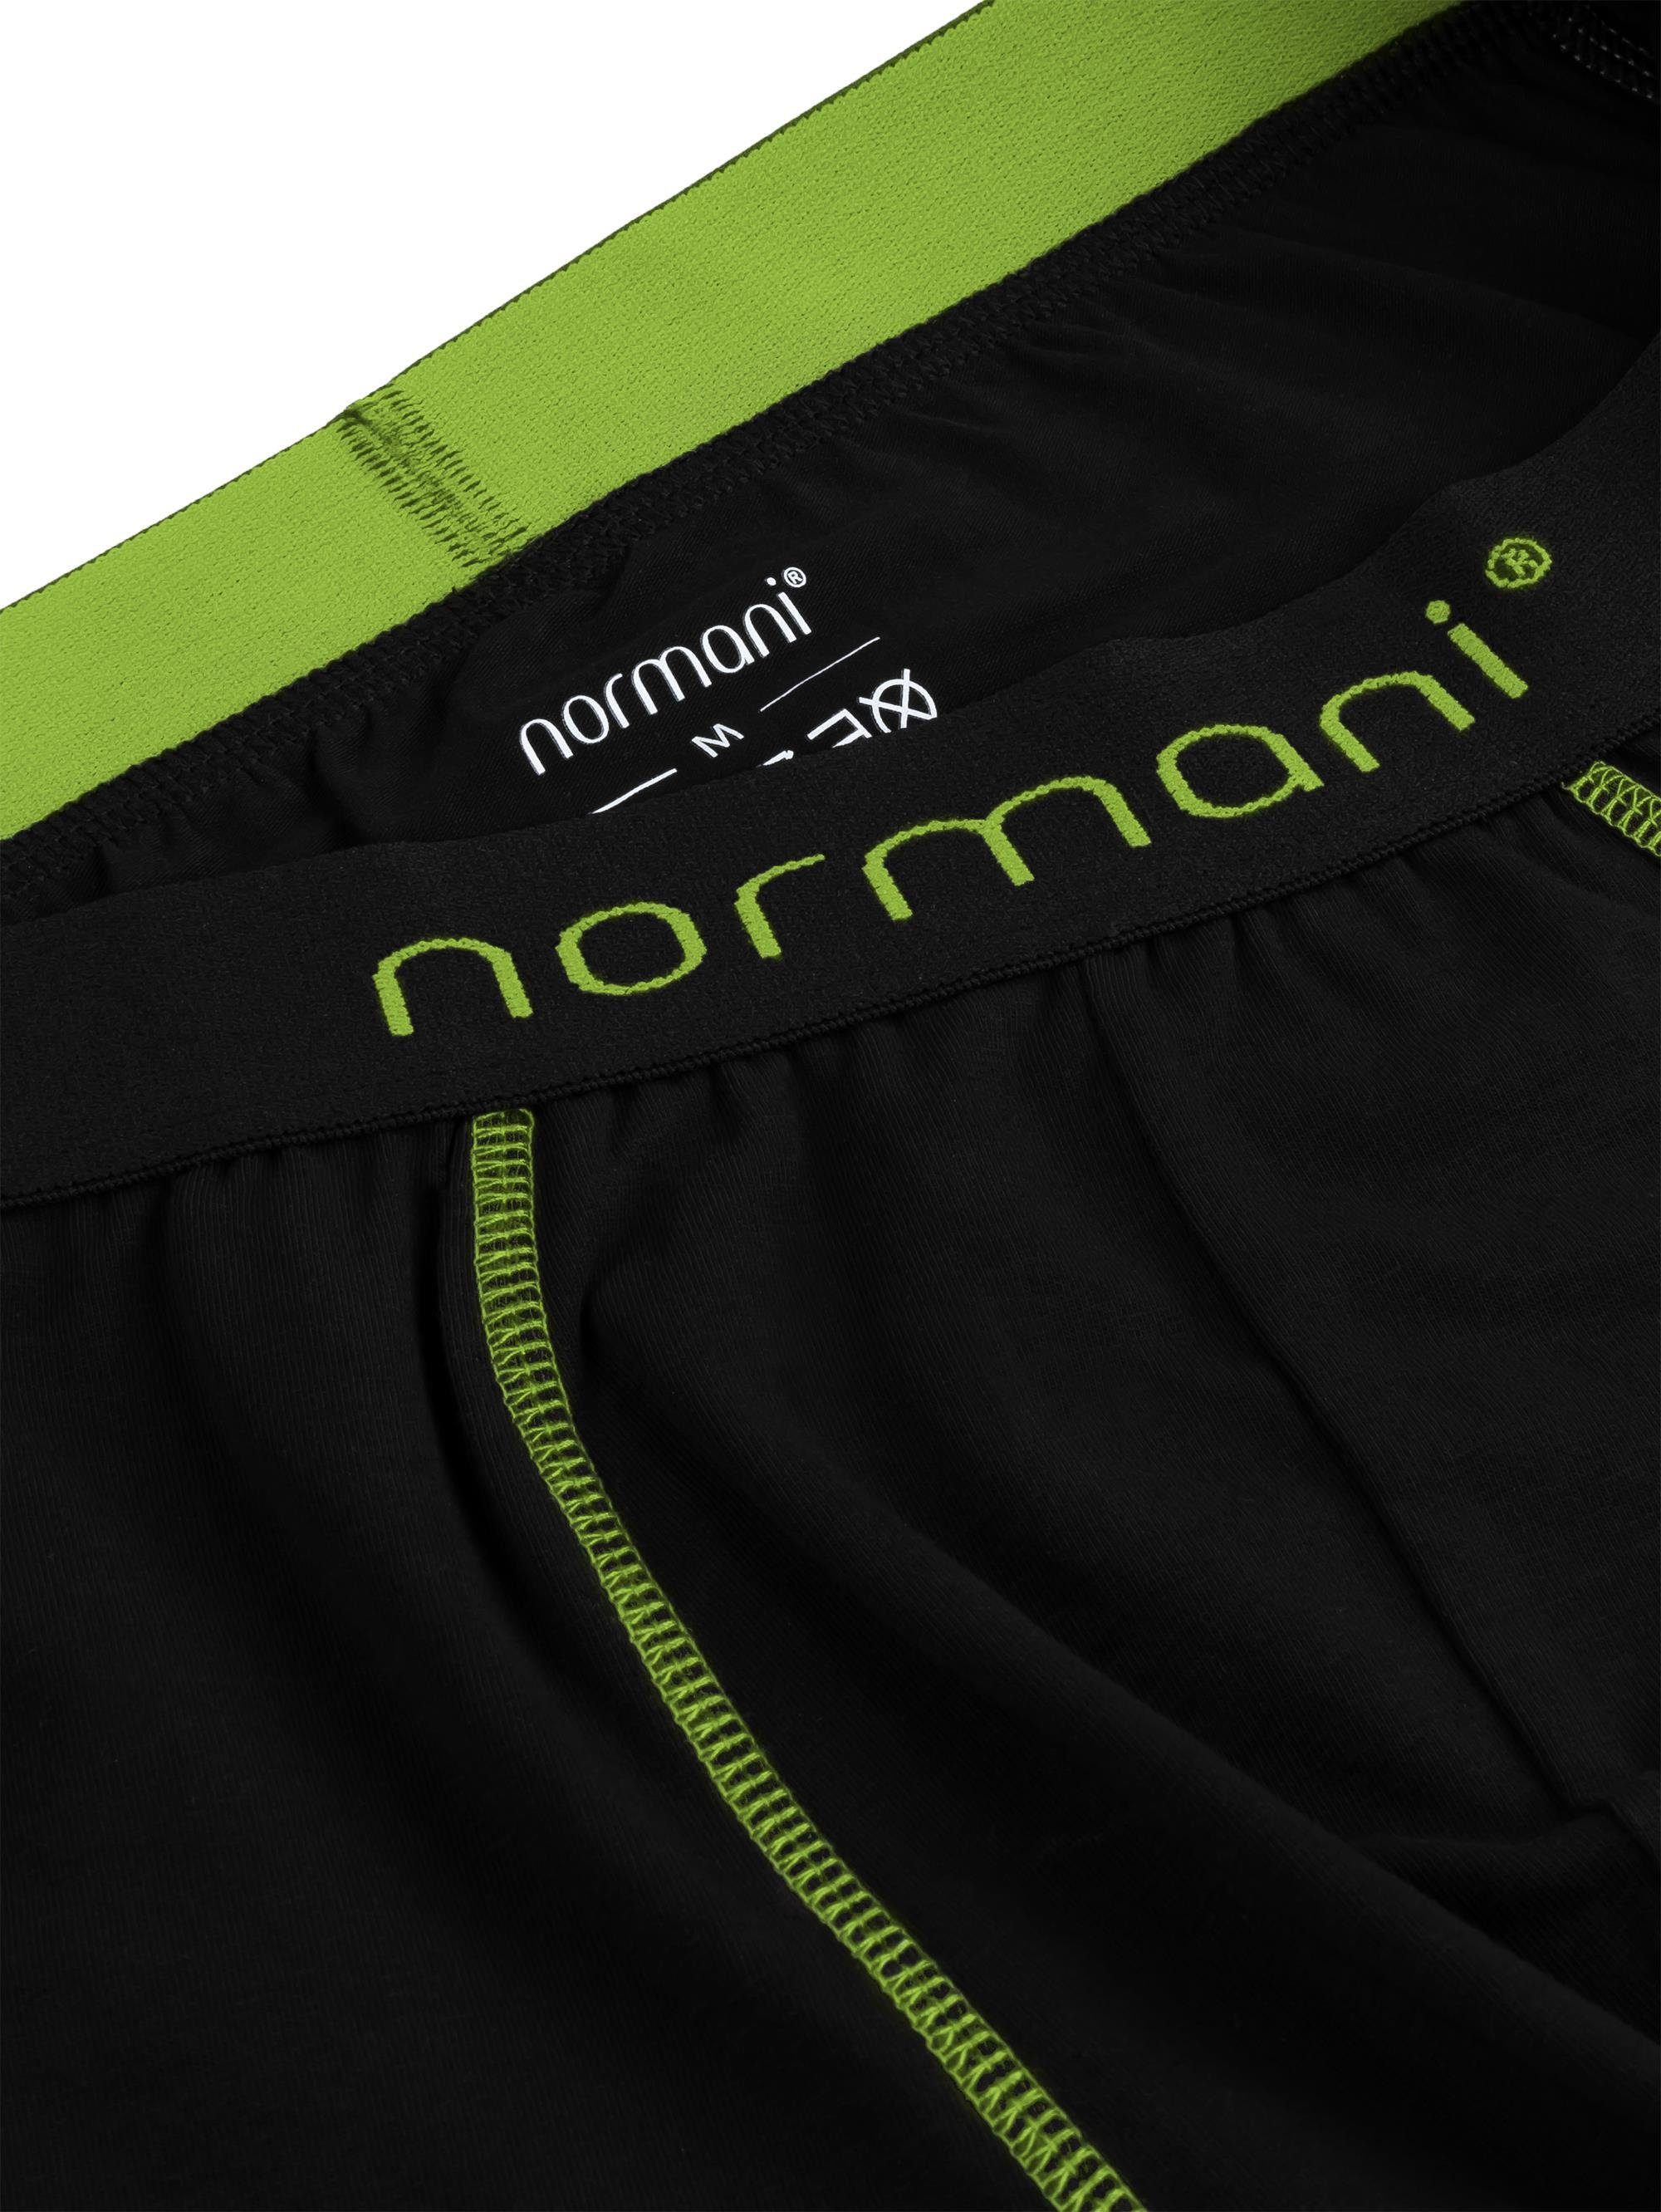 Unterhose für normani atmungsaktiver 6 Männer Herren Baumwoll-Boxershorts Boxershorts Baumwolle aus Grün